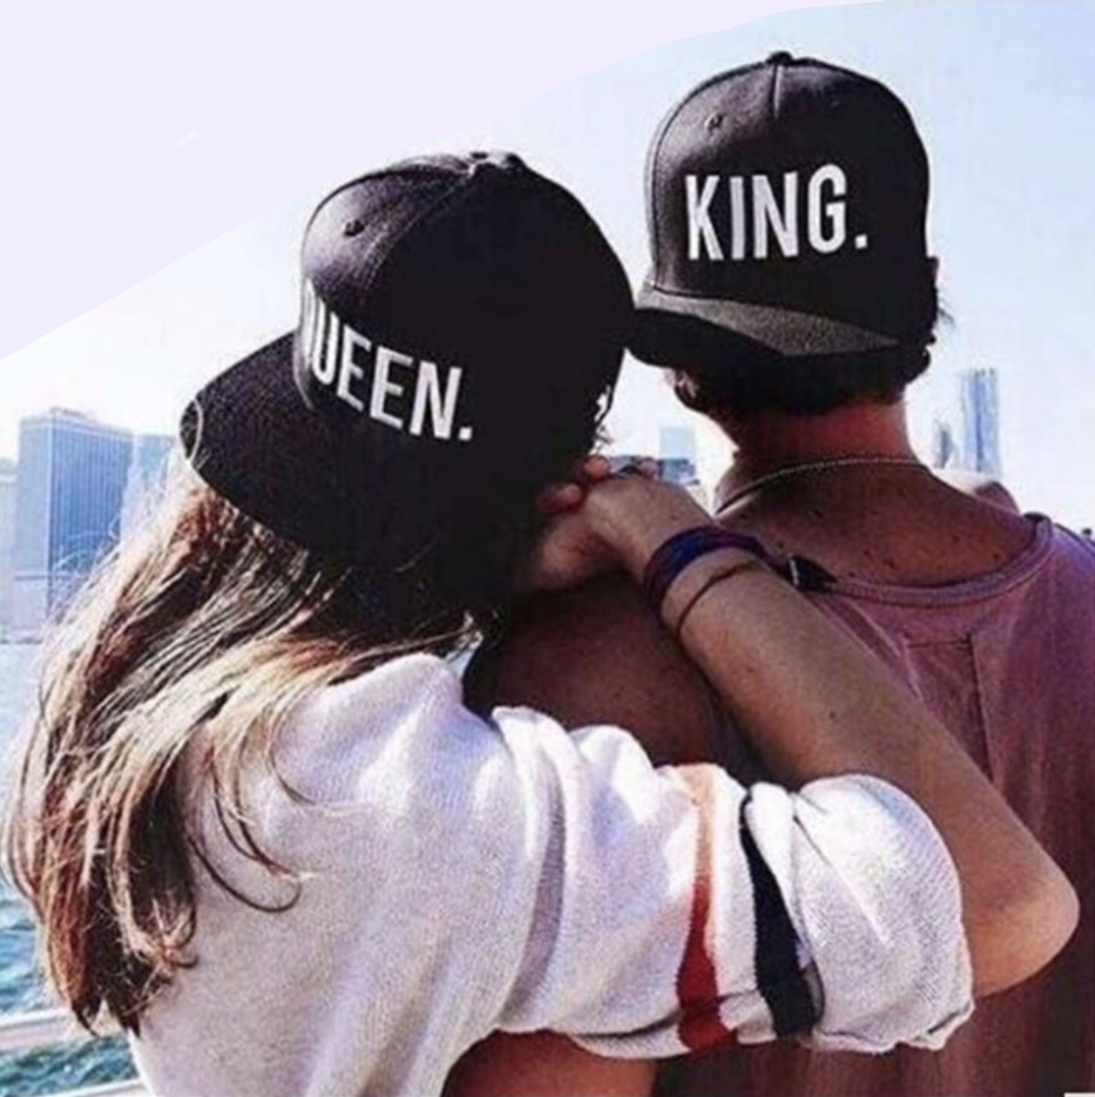 King Queen Lovers Cap